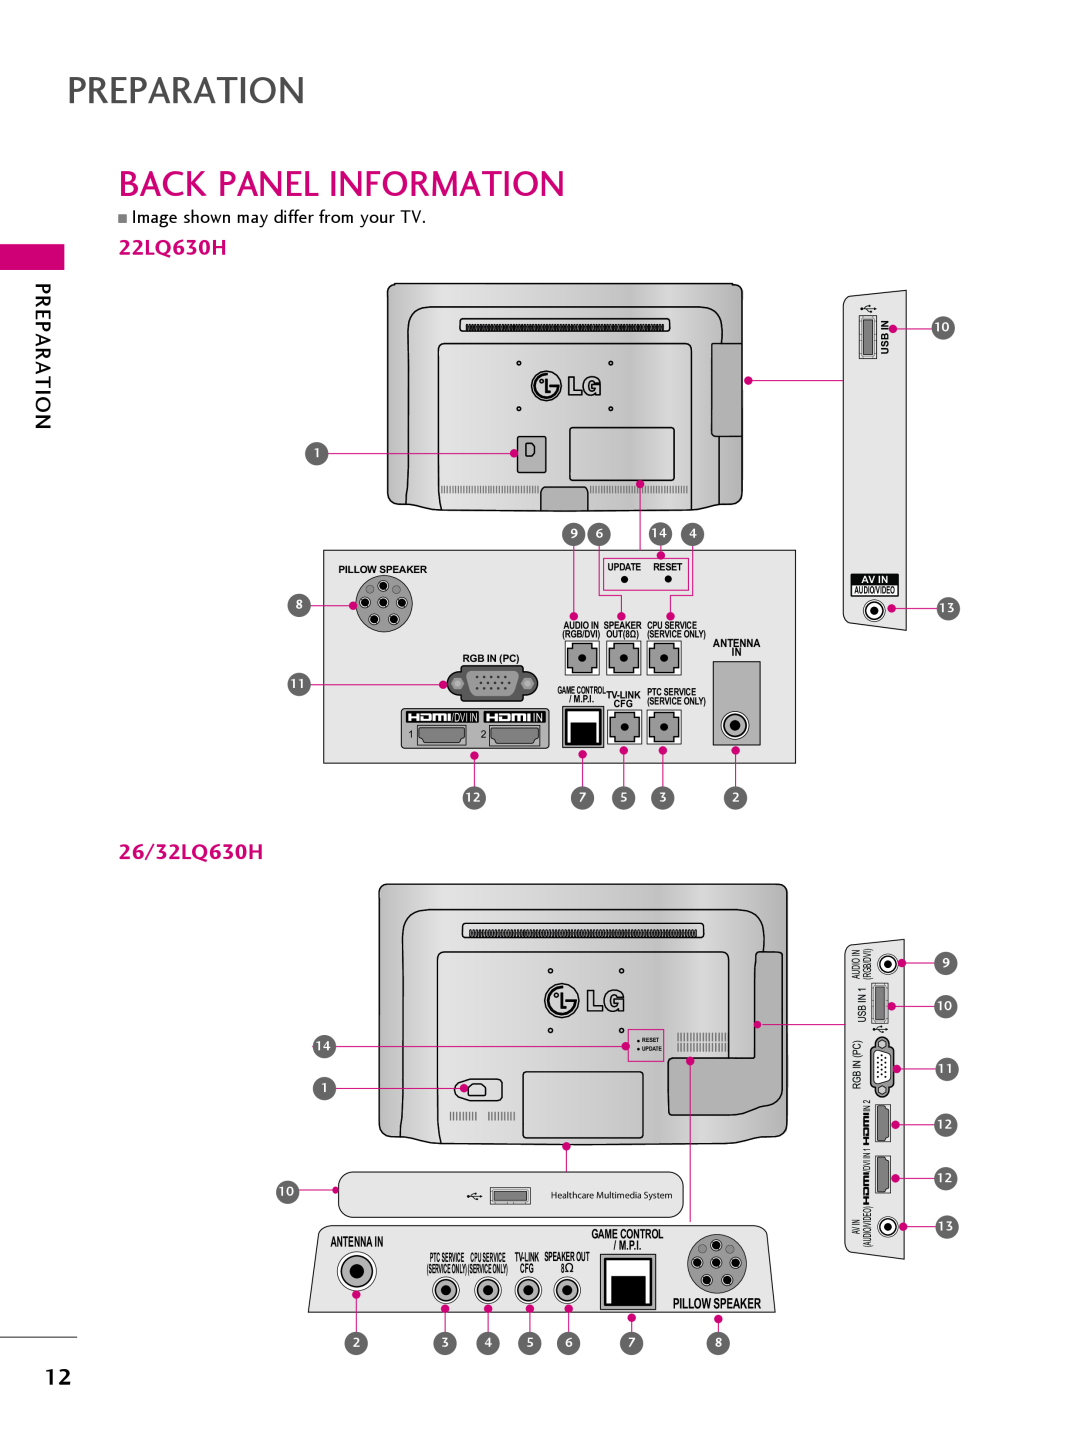 LG Electronics Back Panel Information, Preparation, 22LQ630H, 26/32LQ630H, Dvi In, Pillow Speaker, Update, Reset, Av In 